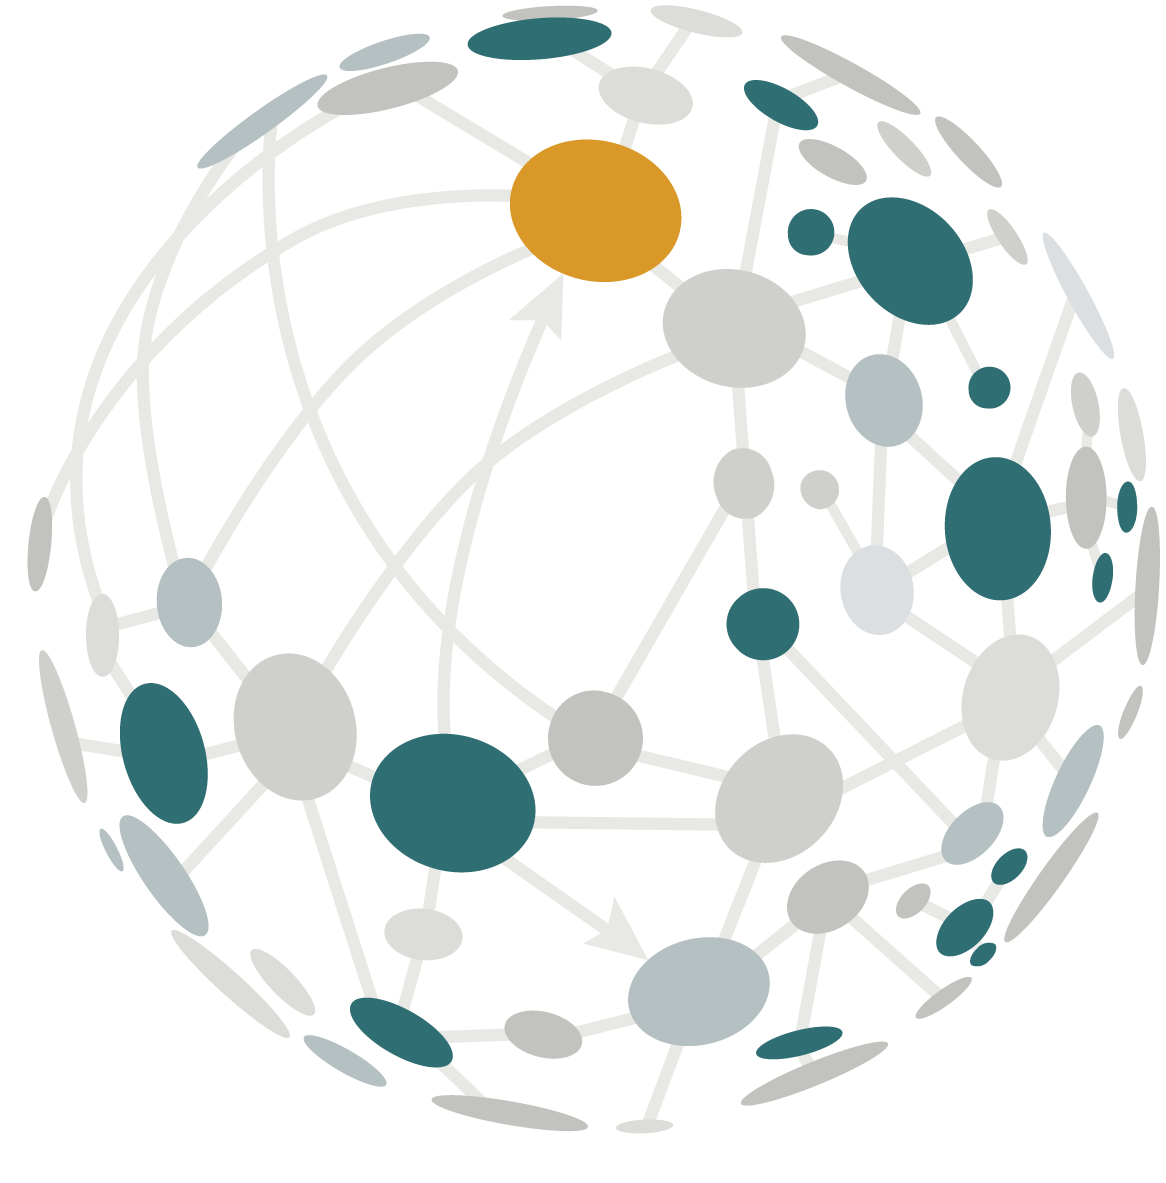 SONEAN Ball Logo – Connecting the Nodes